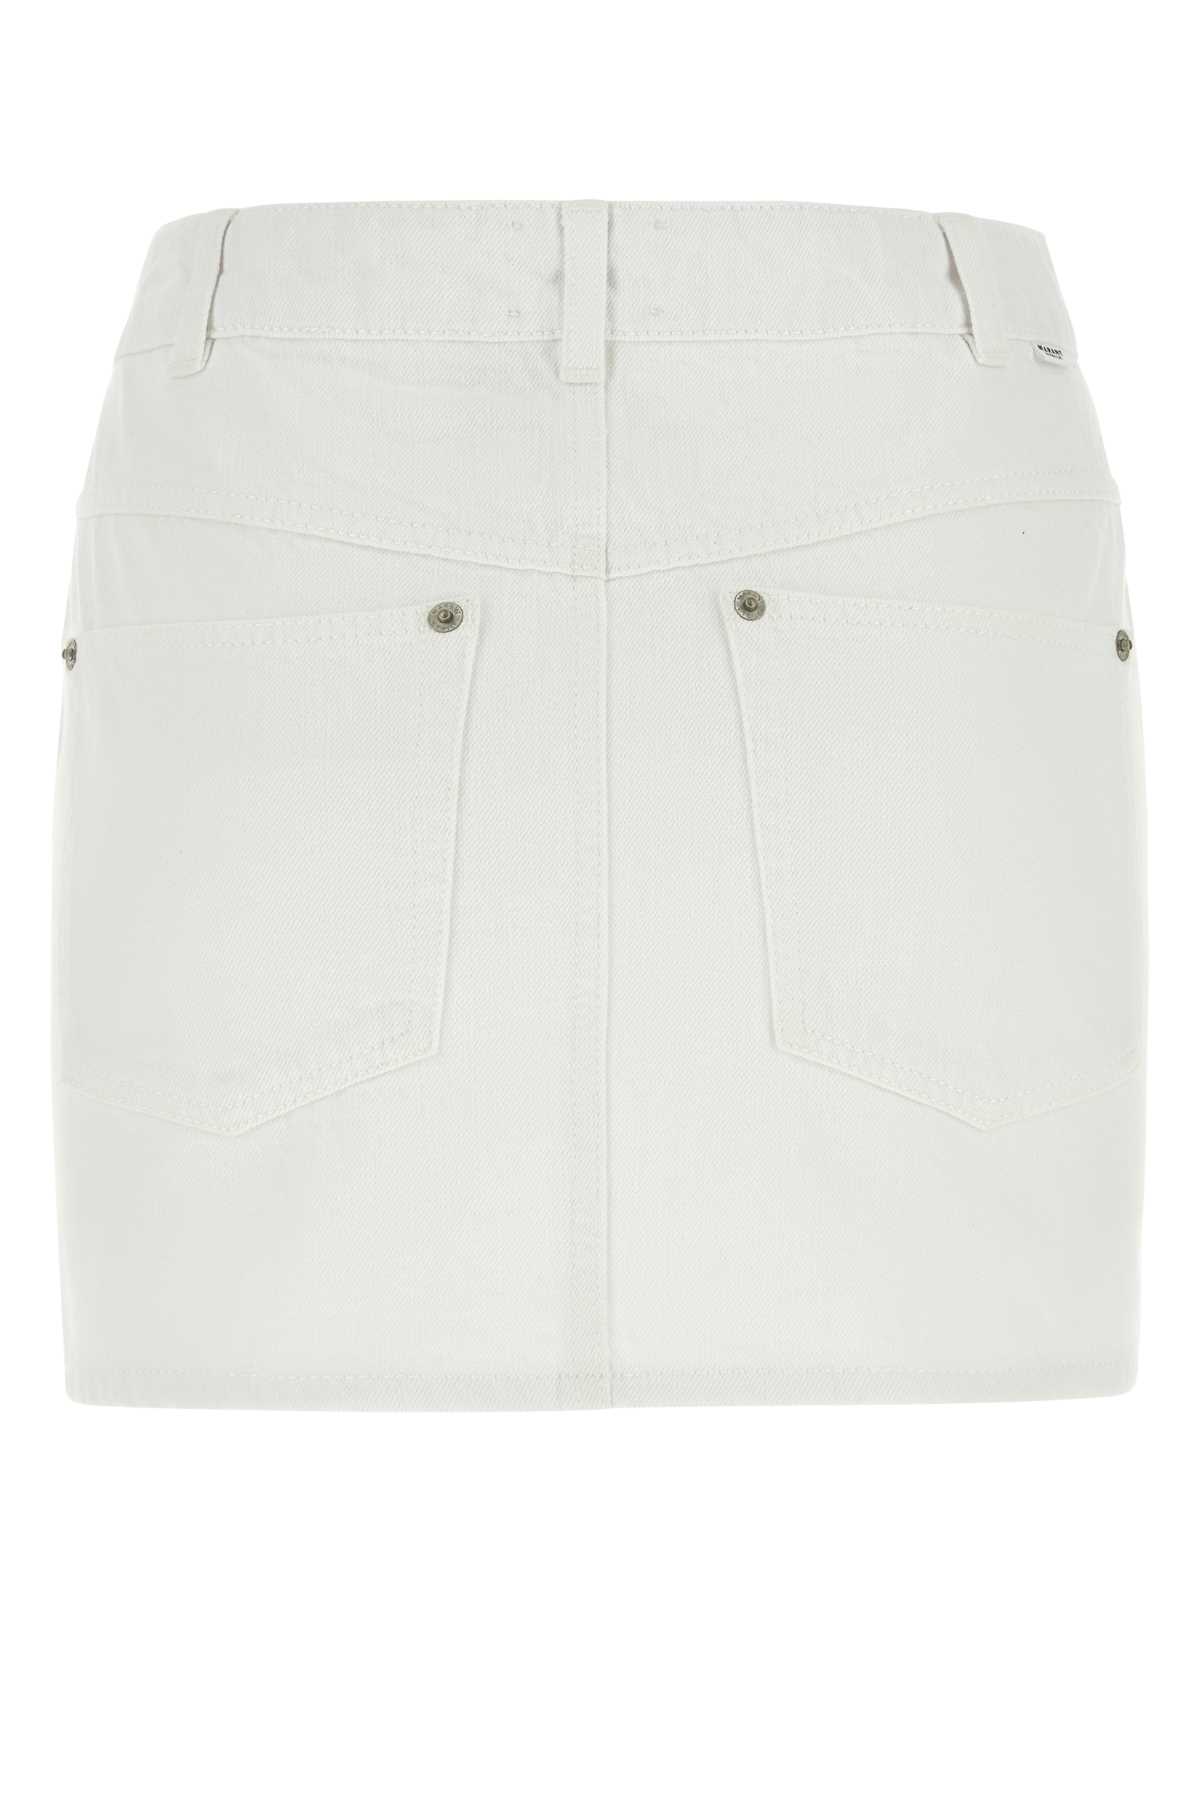 Marant Etoile White Denim Vesna Mini Skirt